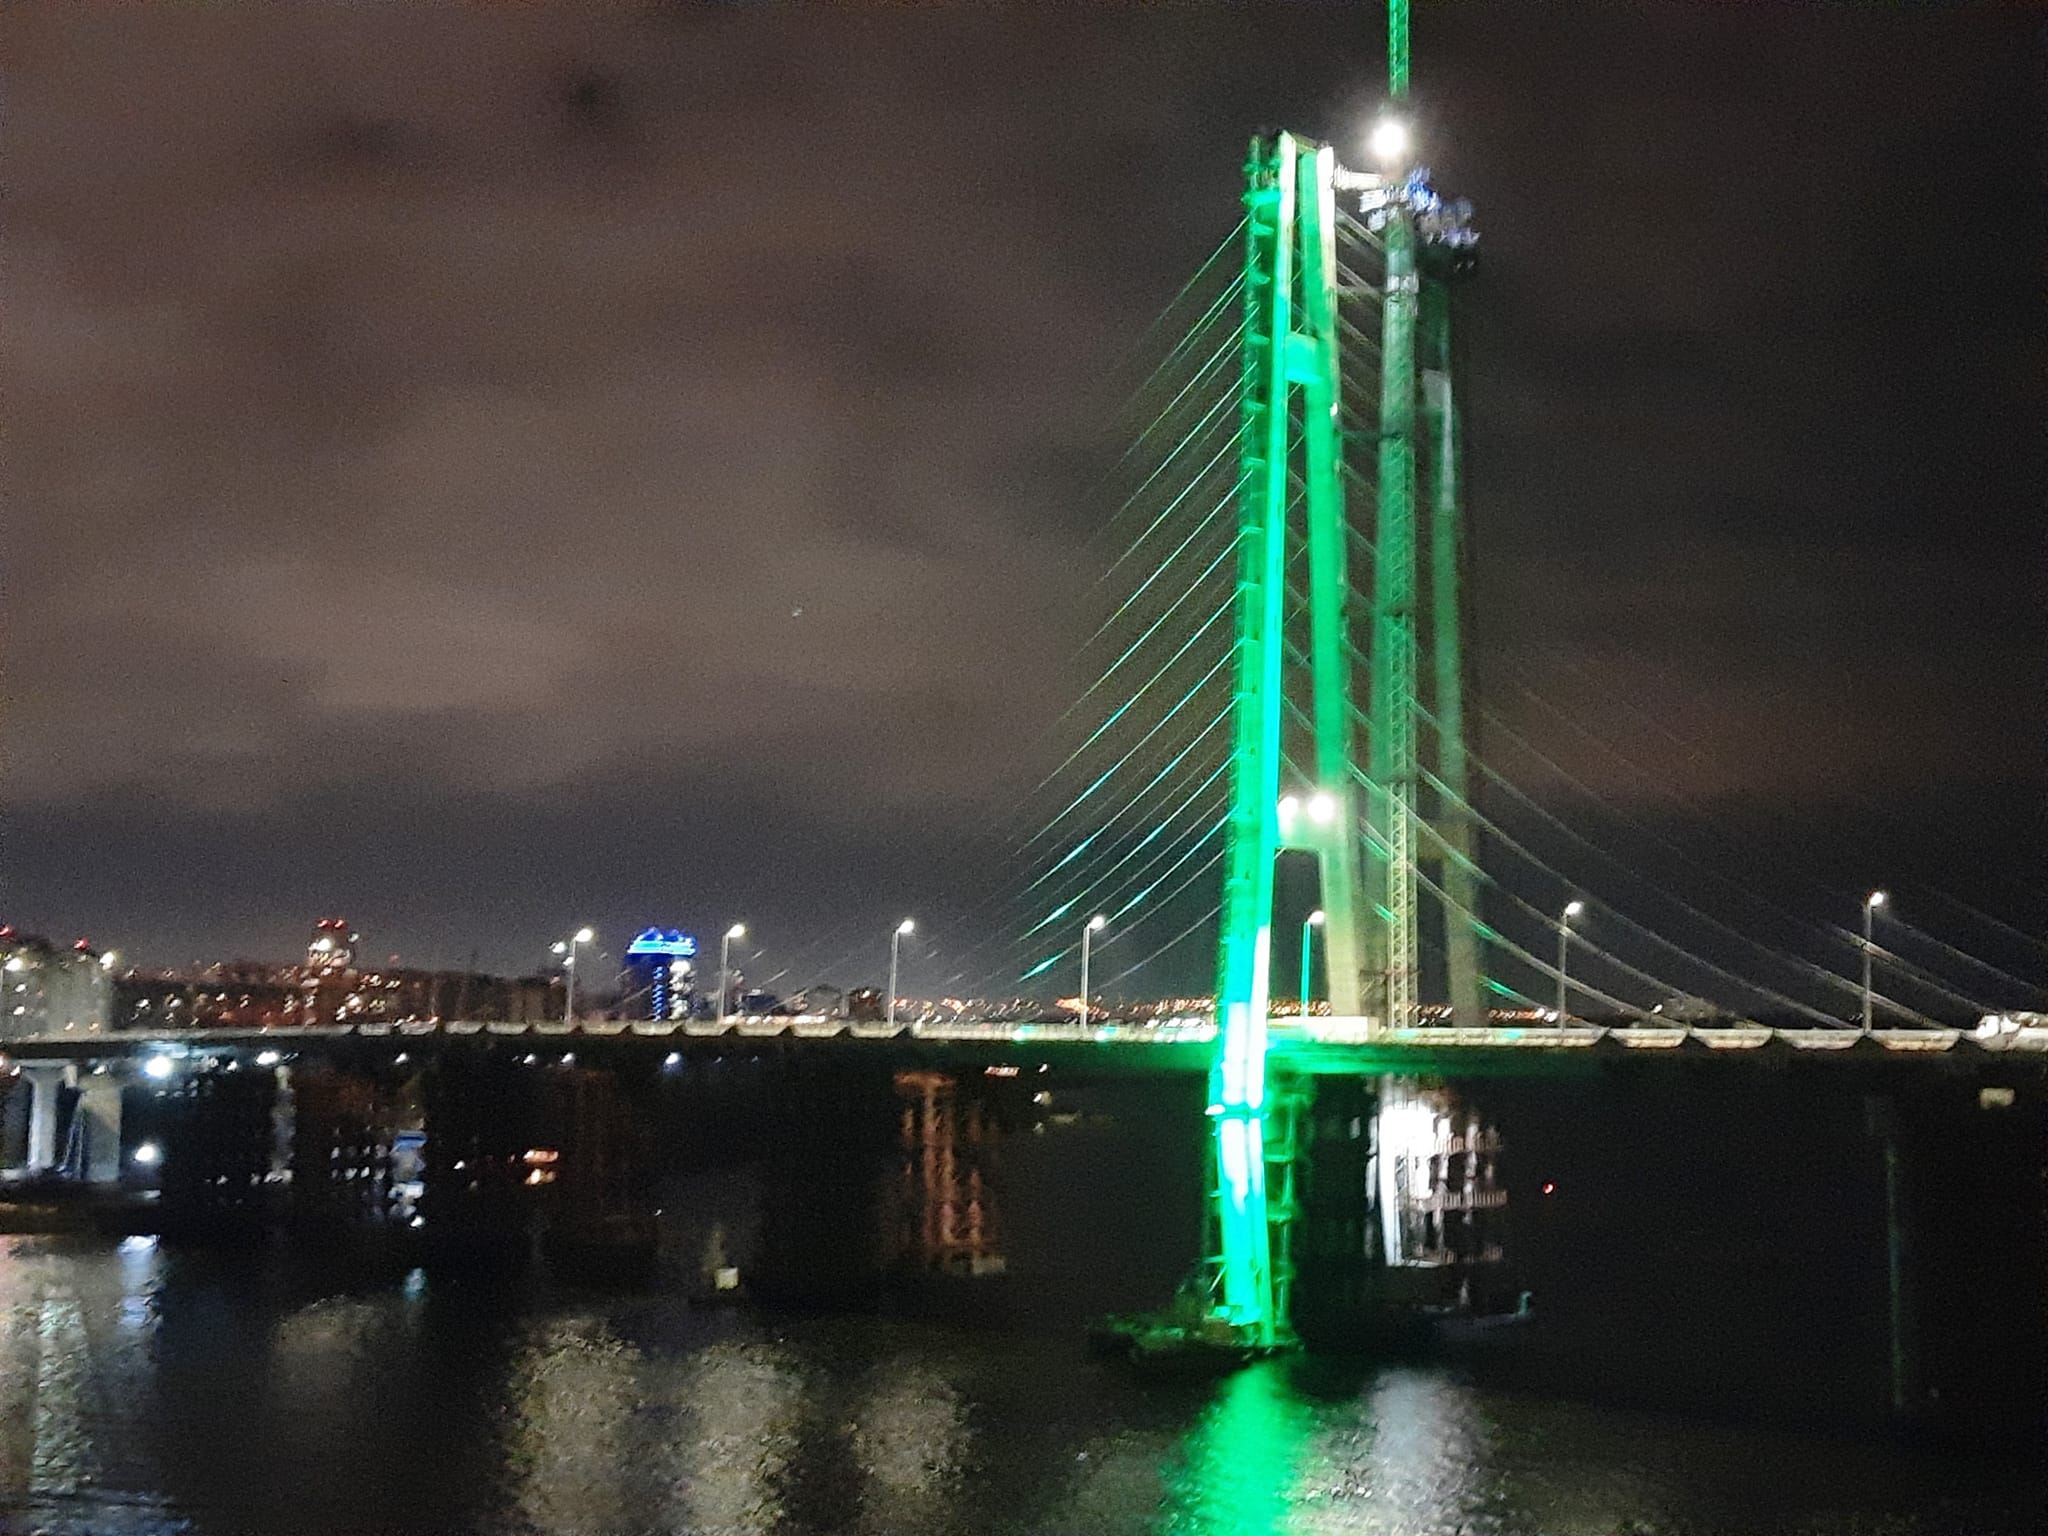 В Запорожье вантовый мост будут освещать разноцветной LED–подсветкой: как это будет выглядеть (ФОТО)